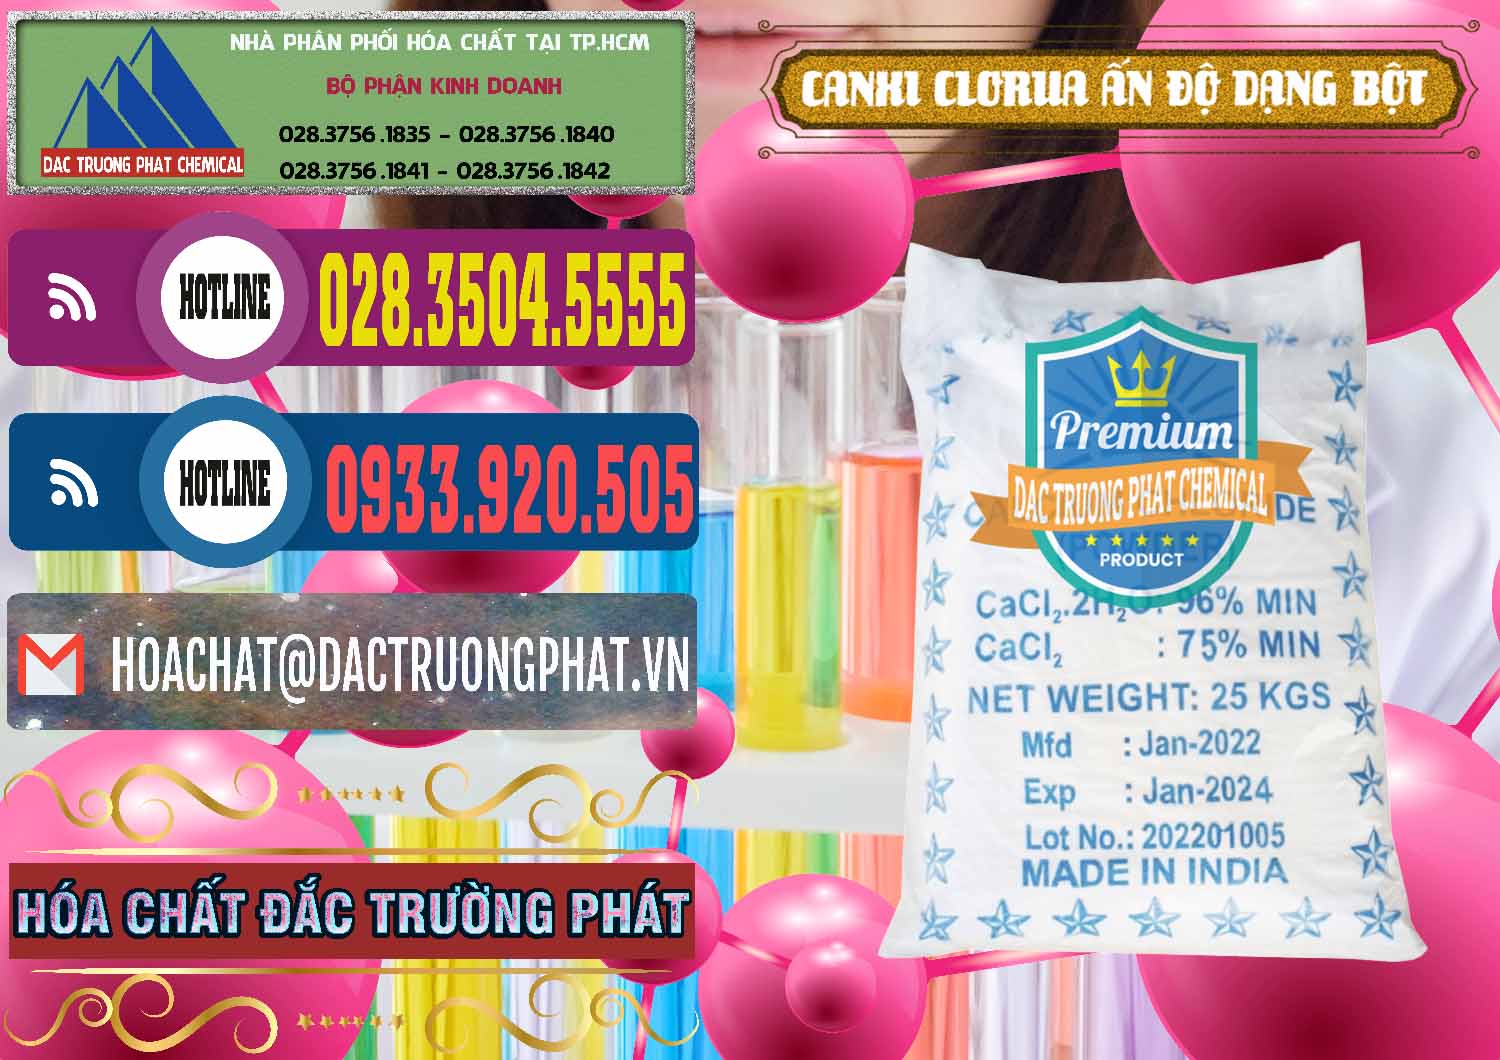 Công ty chuyên cung ứng _ bán CaCl2 – Canxi Clorua 96% Dạng Bột Ấn Độ India - 0420 - Phân phối và cung cấp hóa chất tại TP.HCM - muabanhoachat.com.vn